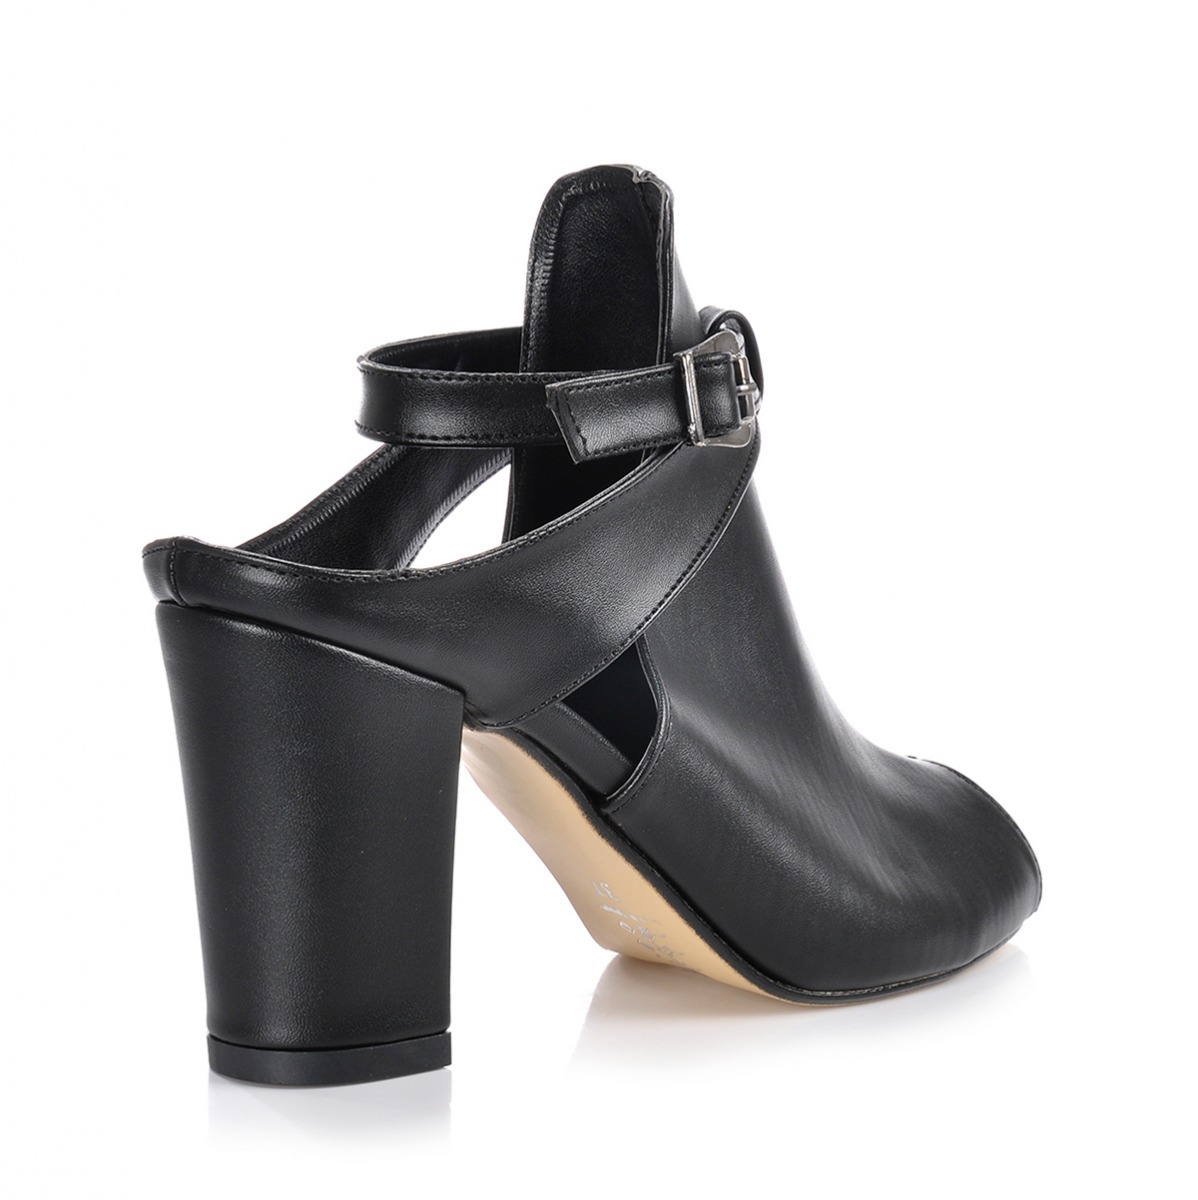 Flo Kadın  Siyah Klasik Topuklu Ayakkabı VZN-231Y. 3